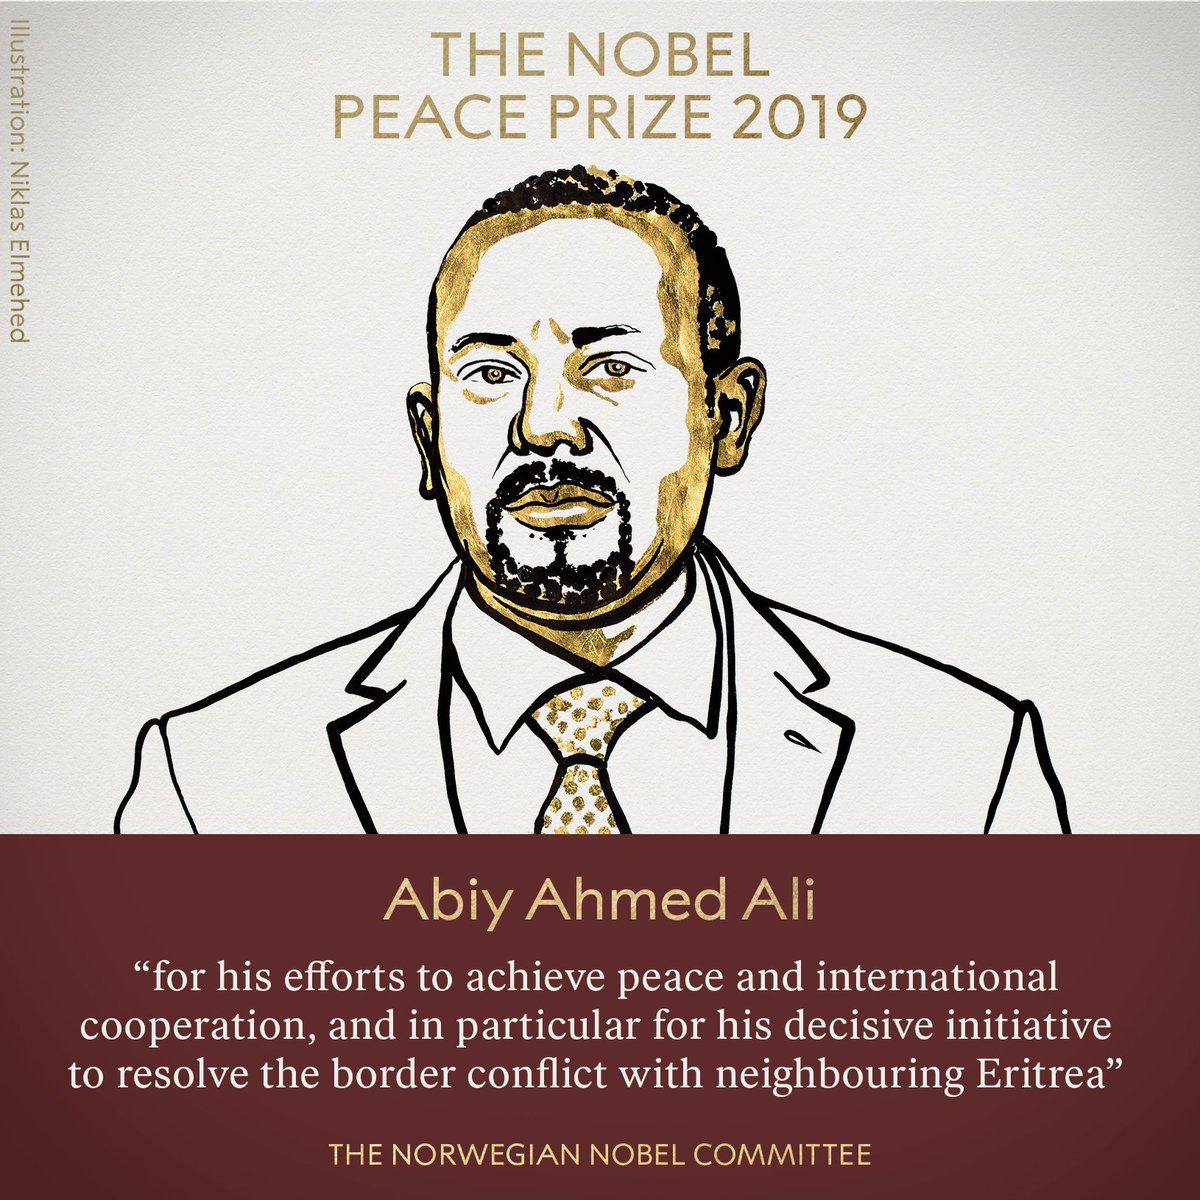 <p>　　<strong>海外网10月11日电 </strong>当地时间10月11日，挪威诺贝尔委员会宣布将2019年诺贝尔和平奖授予埃塞俄比亚总理阿比·艾哈迈德·阿里（Ethiopian Prime Minister Abiy Ahmed Ali）。</p><p>　　阿比·艾哈迈德·阿里今年42岁，获得埃塞俄比亚、南非、英国和美国等多所大学学位。2010年起先后担任奥罗莫人民民主组织中央委员、埃塞俄比亚人民代表院议员、科技信息中心主任、科技部部长、奥罗米亚州城市发展与规划局局长、奥罗莫人民民主组织书记处书记等职务。2018年2月当选奥罗莫人民民主组织主席，３月当选执政党埃塞俄比亚人民革命民主阵线主席，4月就任联邦政府总理。</p><p>　　根据诺贝尔奖官方网站介绍，诺贝尔和平奖创立于1901年，是根据瑞典著名化学家阿尔弗雷德 伯恩哈德 诺贝尔的遗嘱而设立的，旨在奖励“为促进民族团结友好、取消或裁减常备军队以及为举行和平会议尽到最大努力或作出最大贡献的人”。</p><p>　　与其他几项诺贝尔奖不同，和平奖的颁发地点不在瑞典首都斯德哥尔摩，而是在挪威首都奥斯陆。获奖者既可以是个人，也可以是机构。获奖者将获得证书、金质奖章和奖金支票。奖章正面是诺贝尔的头像，背面刻有铭文，意为“为了人类的和平与情谊”。</p><p>　　据诺奖官网介绍，诺贝尔和平奖至今已颁发100次。截至2018年，最年轻的获奖者为时年17岁的巴基斯坦少女马拉拉·优素福·扎伊，最年长者为时年87岁的英国著名原子物理学家、反核人士约瑟夫·罗特布拉特。共有17名女性曾获奖。</p><p>　　以下为近几年的诺贝尔和平奖获得者：</p><p>　　2018年，授予刚果（金）妇科医生德尼·穆奎格和伊拉克人权活动人士纳迪娅·穆拉德，以表彰他们为反对在战争和武装冲突中使用性暴力而做出的努力。</p><p>　　2017年，授予国际非政府组织“国际废除核武器运动”，以表彰该组织致力于普及核武器给人类带来巨大灾难的相关知识以及争取彻底消除核武器的努力。</p><p>　　2016年的获得者为哥伦比亚总统桑托斯。获奖理由是，他持久的努力结束了该国超过50年之久的内战。</p><p>　　2019年诺贝尔奖从10月7日起陆续揭晓。7日当天公布了生理学或医学奖获得者——美国医学家威廉·凯林、格雷格·塞门扎以及英国医学家彼得·拉特克利夫，他们凭借革命性地发现让人们理解了细胞在分子水平上感受氧气的基本原理而获奖。</p><p>　　8日，2019年诺贝尔物理学奖则颁发给了美国科学家詹姆斯·皮布尔斯，以及两位瑞士科学家米歇尔·马约尔和迪迪埃·奎洛兹，以表彰他们在天体物理领域所作出的杰出贡献。</p><p>　　9日，2019年诺贝尔化学奖揭晓，美国科学家约翰·古迪纳夫、英裔美国科学家斯坦利·惠廷厄姆与日本科学家吉野彰共同获得此奖，以表彰他们在锂离子电池领域作出的突出贡献。</p><p>　　10日，瑞典文学院宣布将2018年和2019年诺贝尔文学奖分别授予波兰女作家奥尔加·托卡尔丘克和奥地利作家彼得·汉德克，获奖理由为：托卡尔丘克“充满激情的叙事想象力代表了一种跨越边界的生活形式”，而汉德克用其“富有语言学才能的、有影响力的著作探索了人类经验的外围及特异性”。</p><p>　　另据诺奖官网消息，14日将公布诺贝尔经济学奖获得者。（海外网 吴倩 王珊宁 李萌）</p>